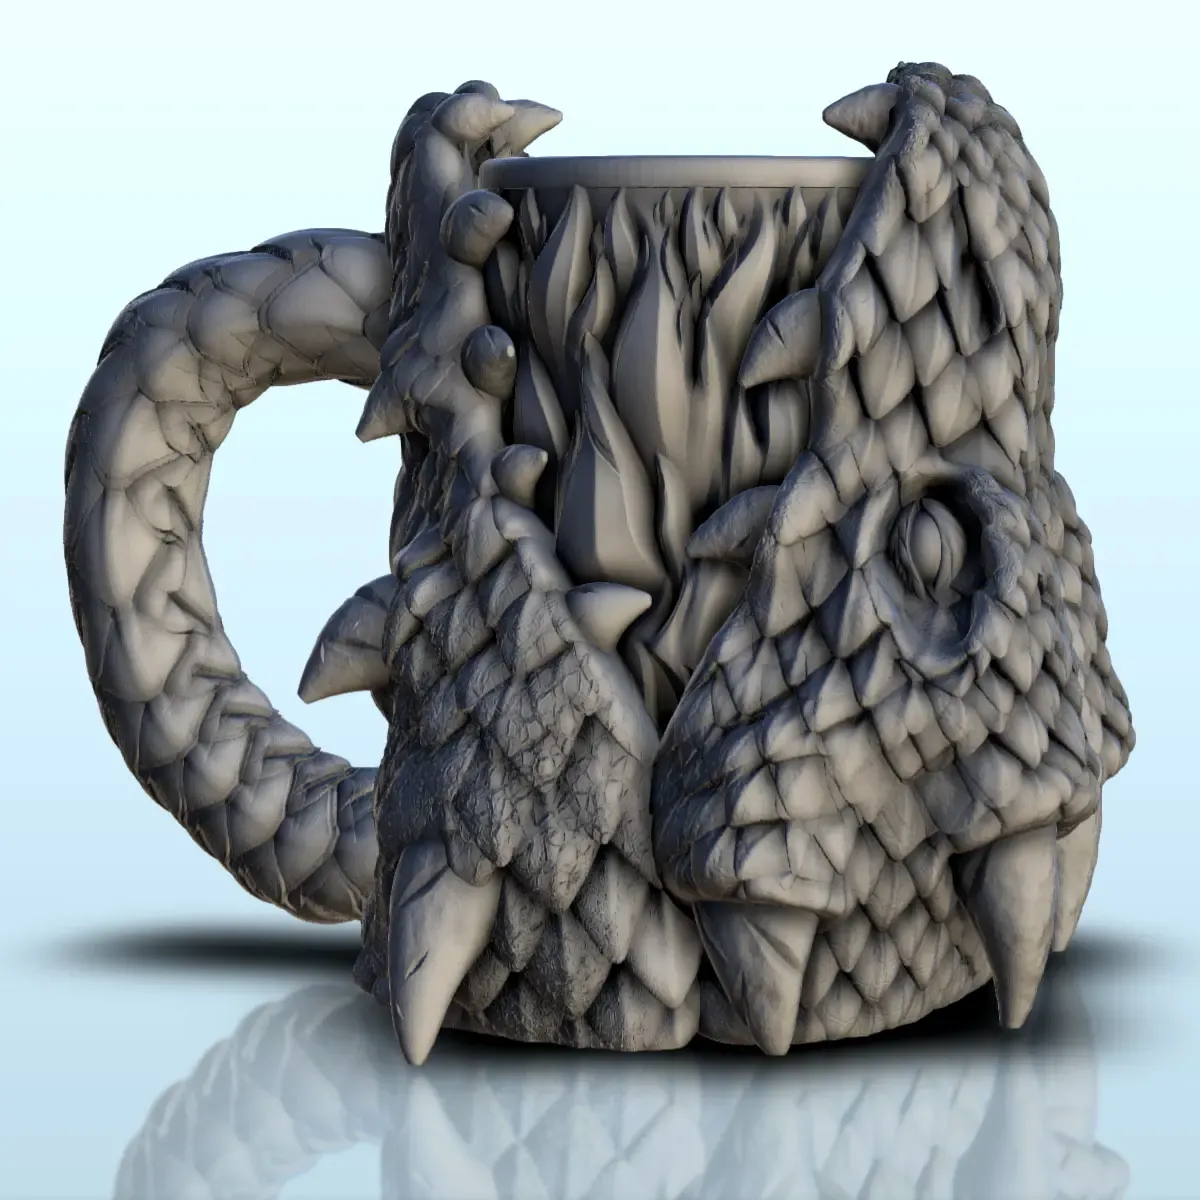 Rogue dragon dice mug (1) - beer can holder